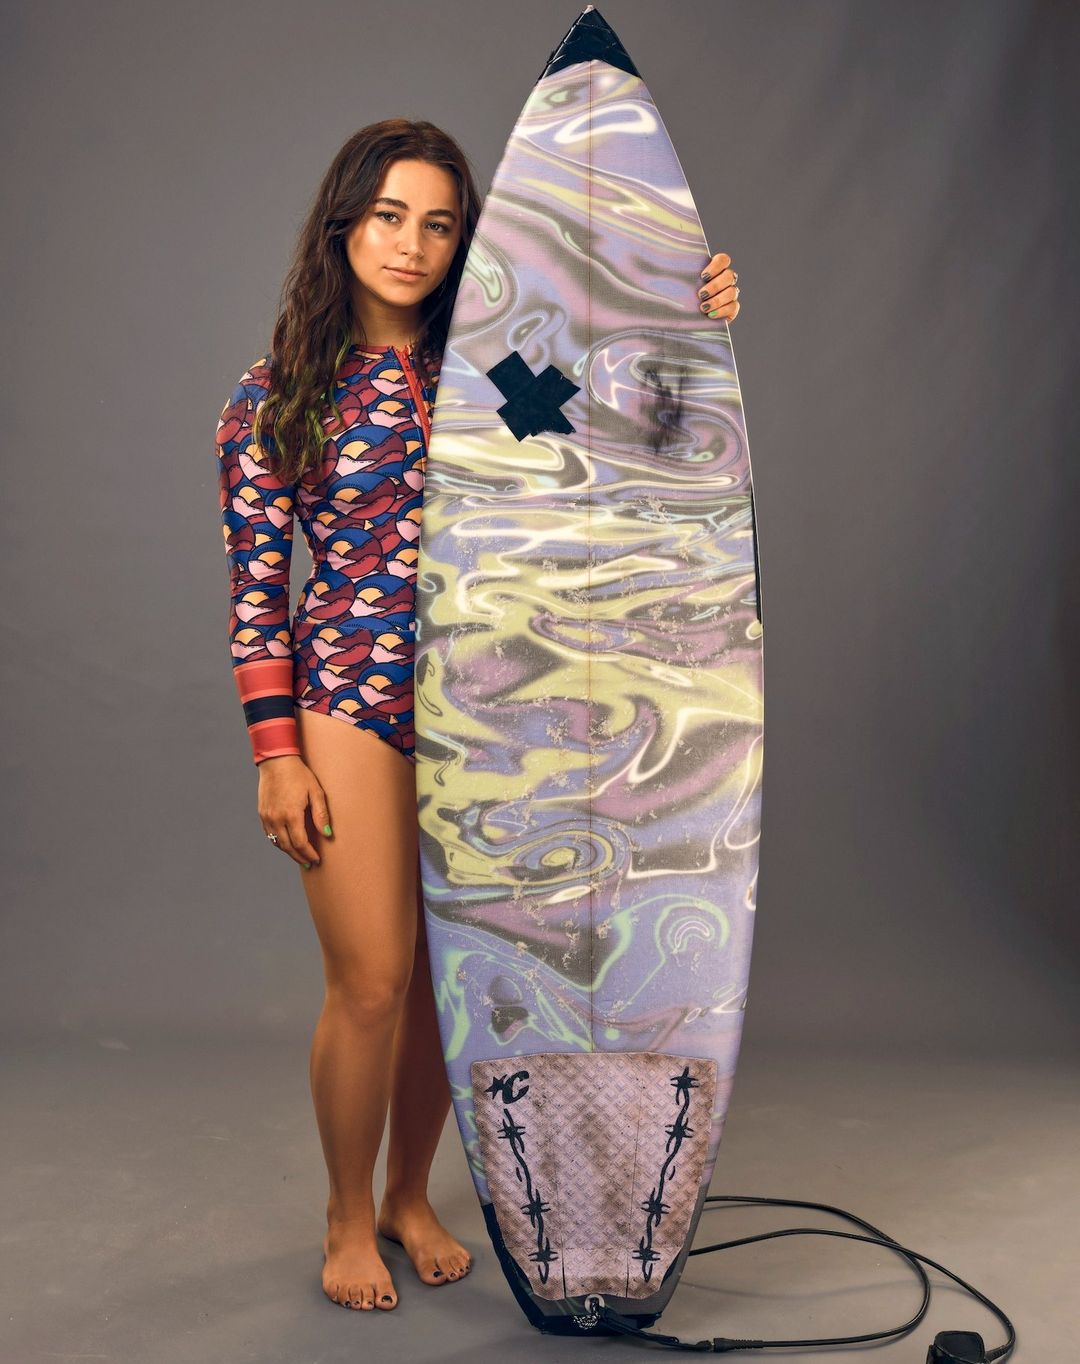 Women's surfing - Wikipedia